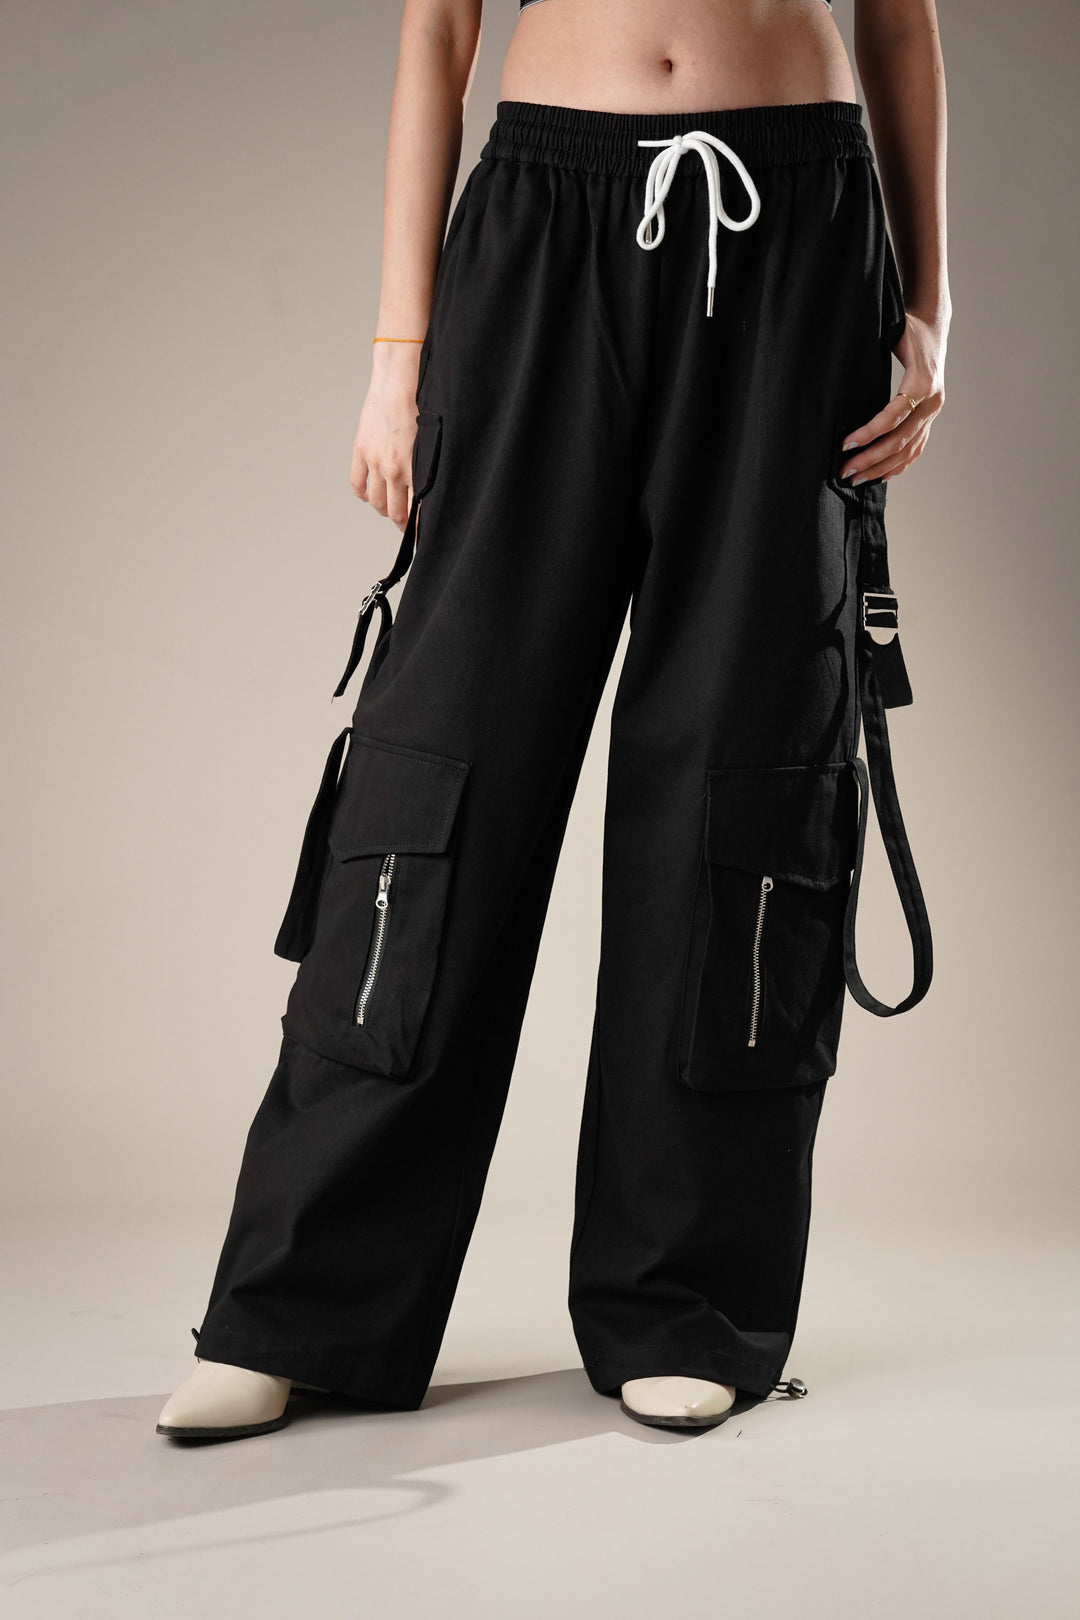 Black oversized cargo pants for women